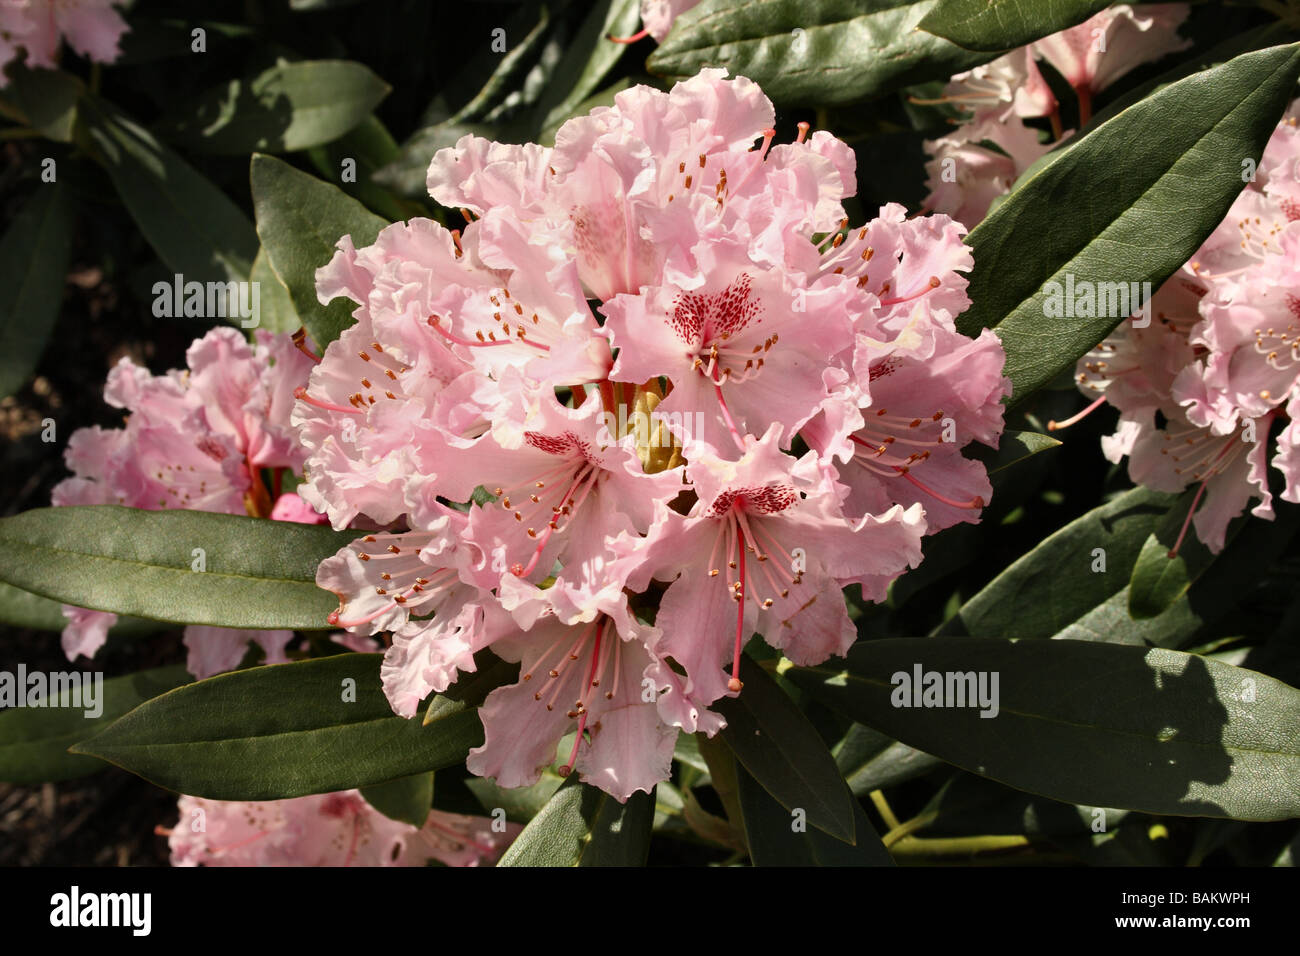 Rhododendron fiore in fiore famiglia Ericaceae che mostra i dettagli di fiori e componenti Foto Stock